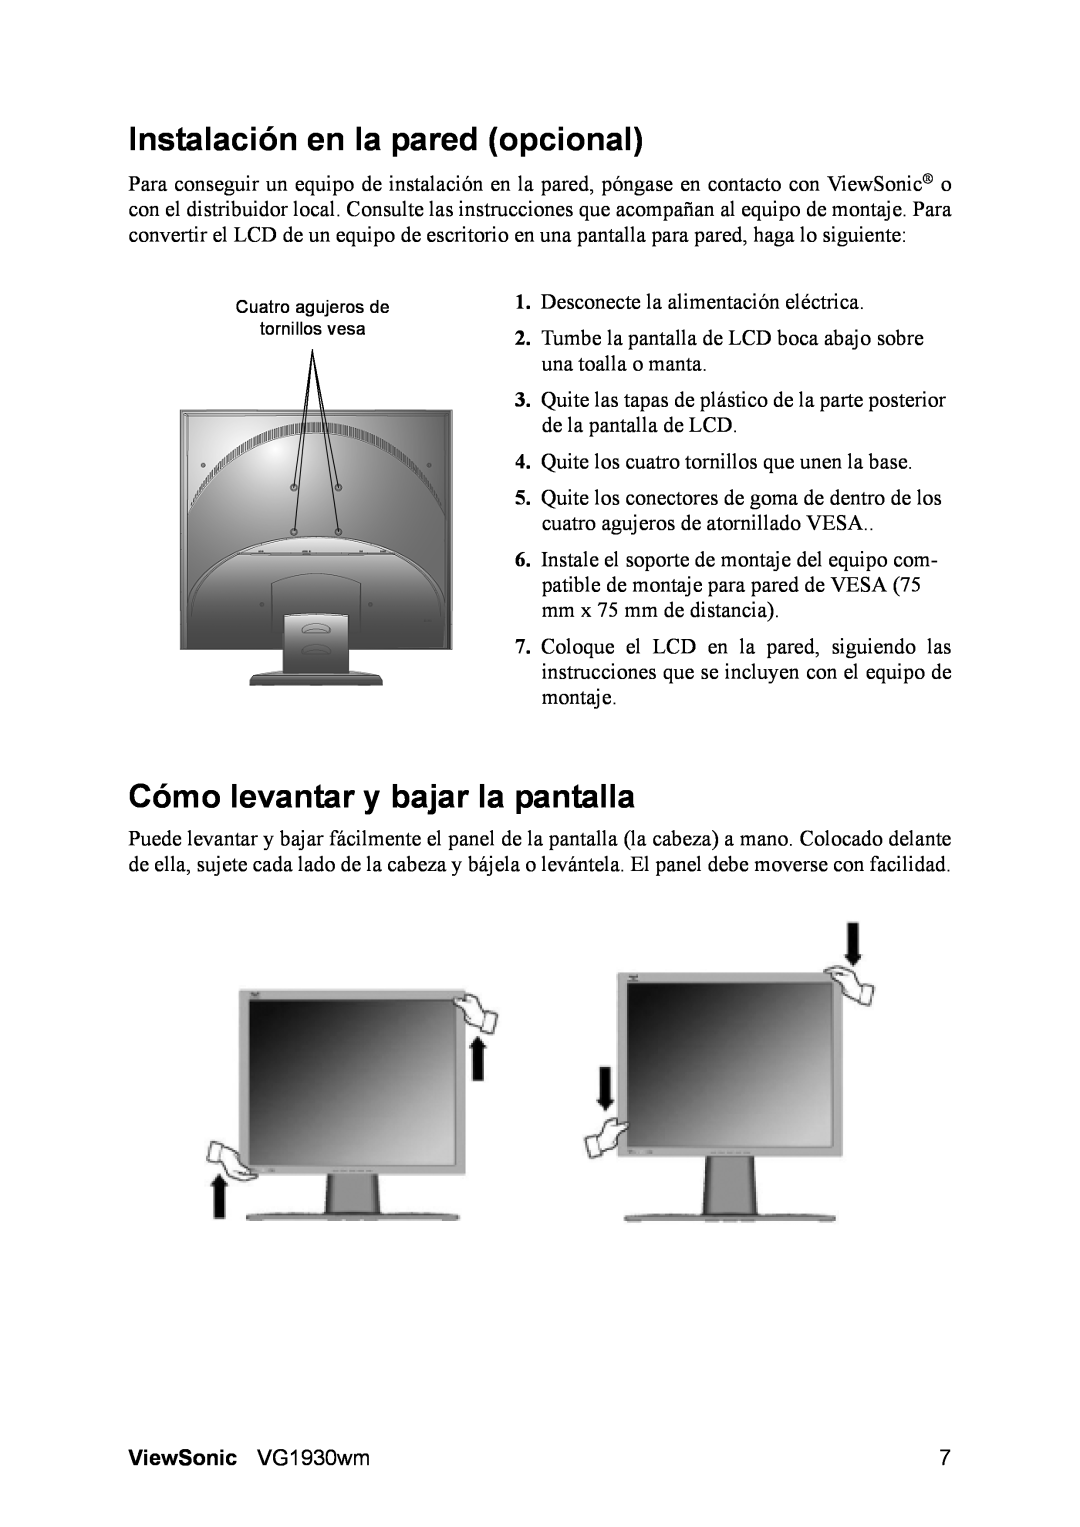 ViewSonic manual Instalación en la pared opcional, Cómo levantar y bajar la pantalla, ViewSonic VG1930wm 